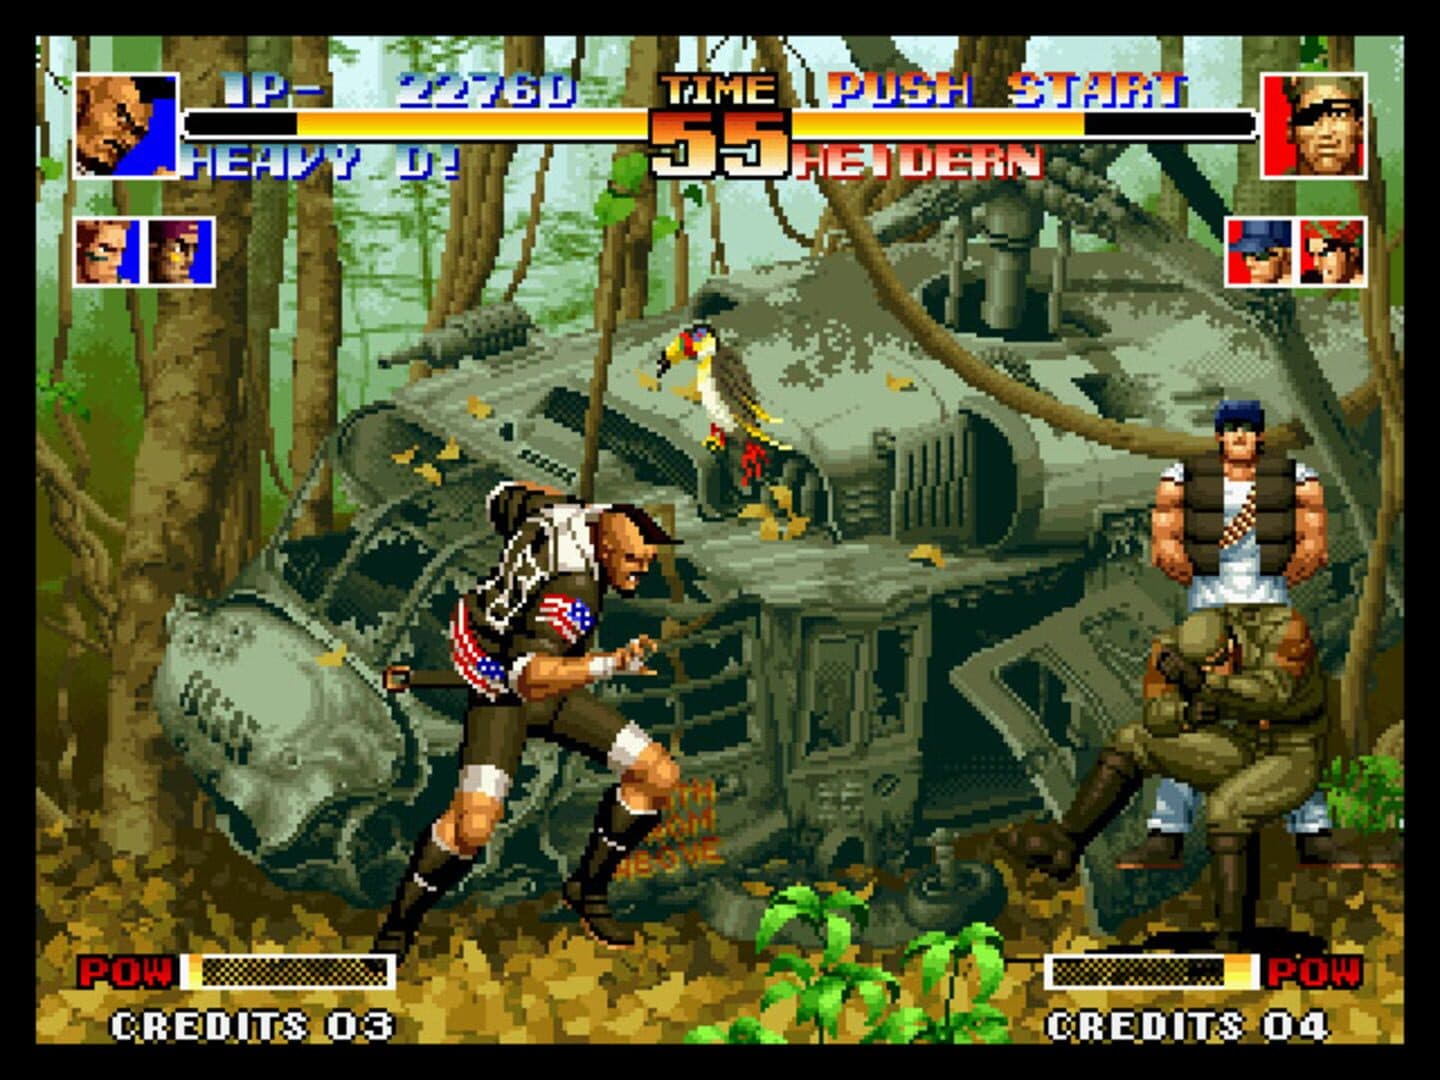 SNK Arcade Classics Vol. 1 Image